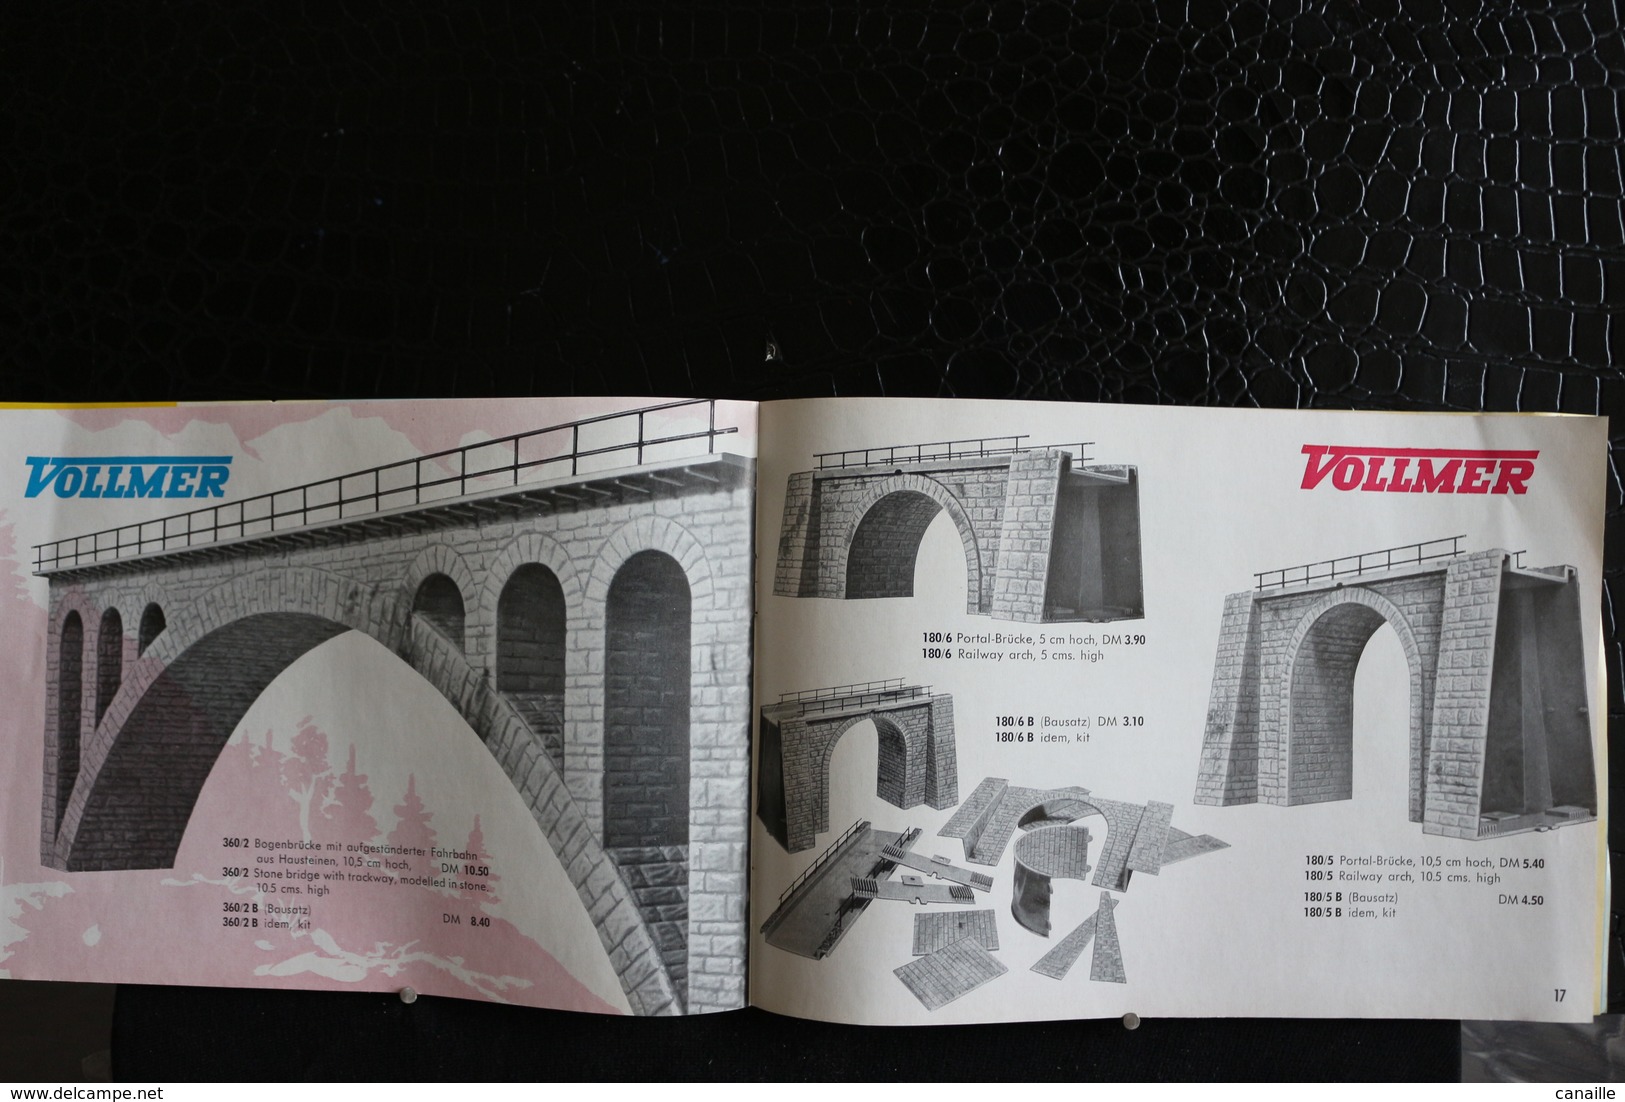 Catalogue en Néerlandais / Rivarossi - Catalogue  Revue  1958 en Néerlandais  / Catalogu de 27 de pages, forma 21x15 cm